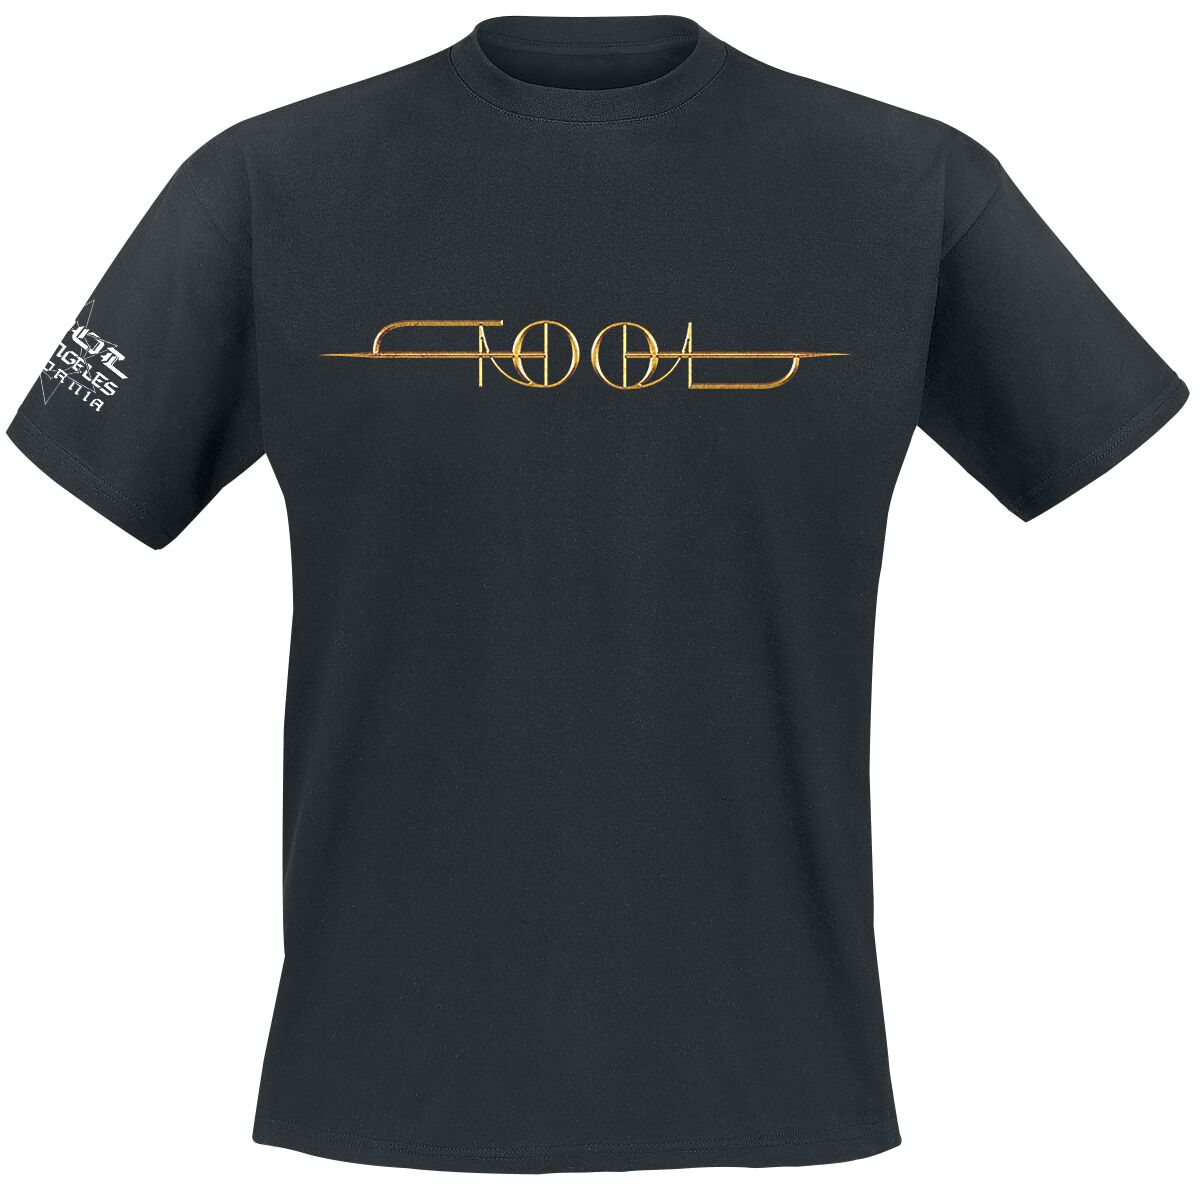 Tool T-Shirt - Gold ISO - M bis XXL - für Männer - Größe XXL - schwarz  - Lizenziertes Merchandise!